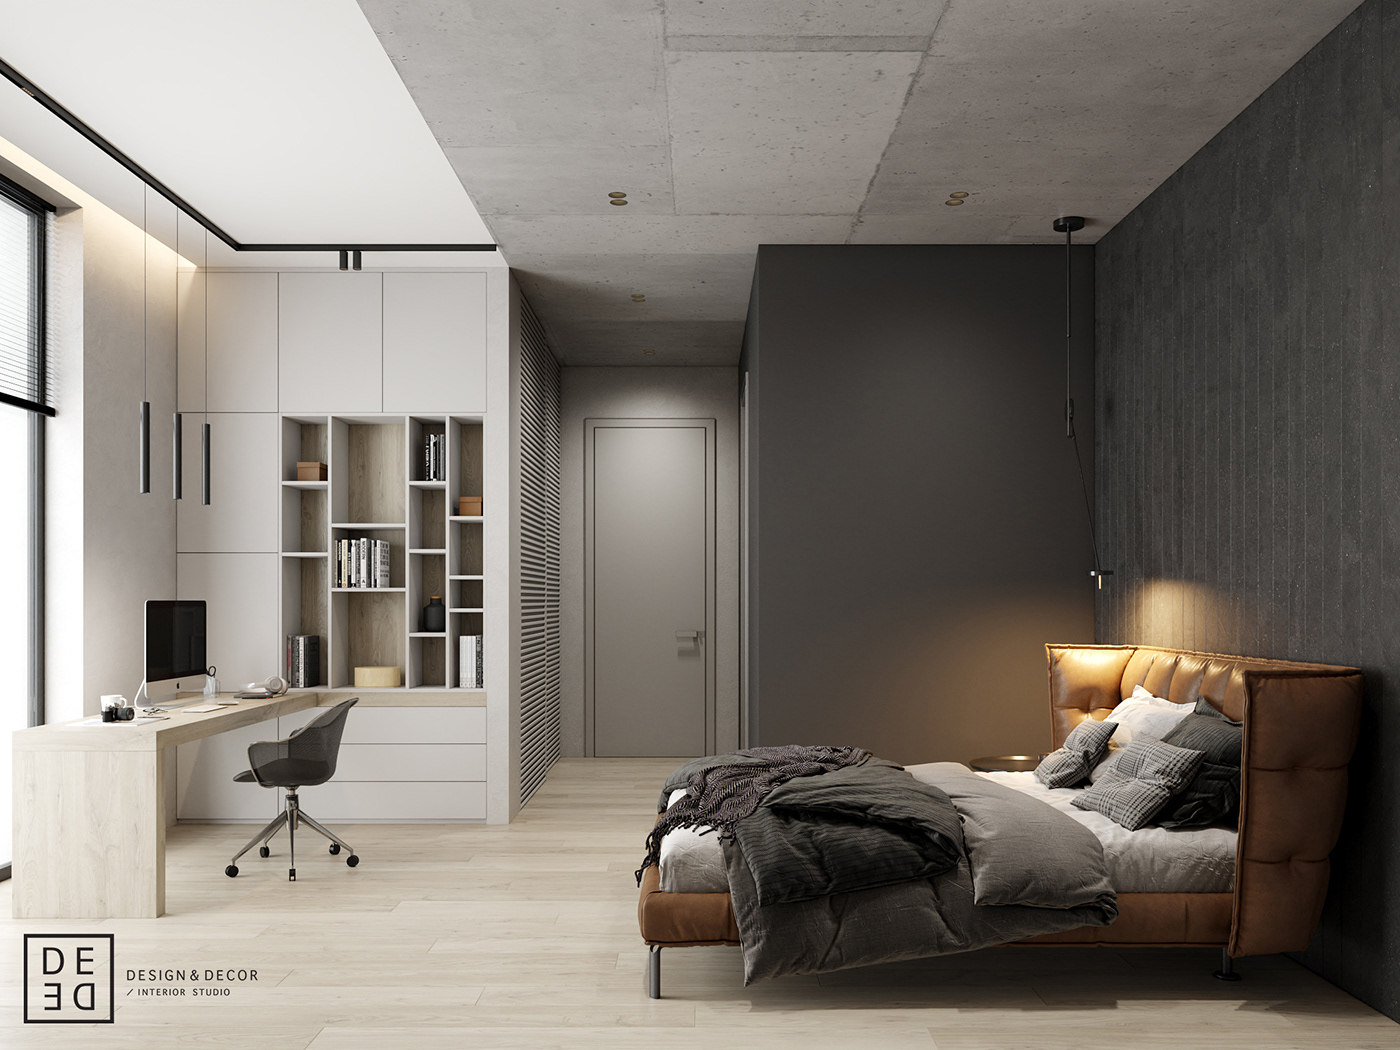 Interior design interiordesign Minimalism modern DE&DE Interior Studio designer corona render  3ds max architecture